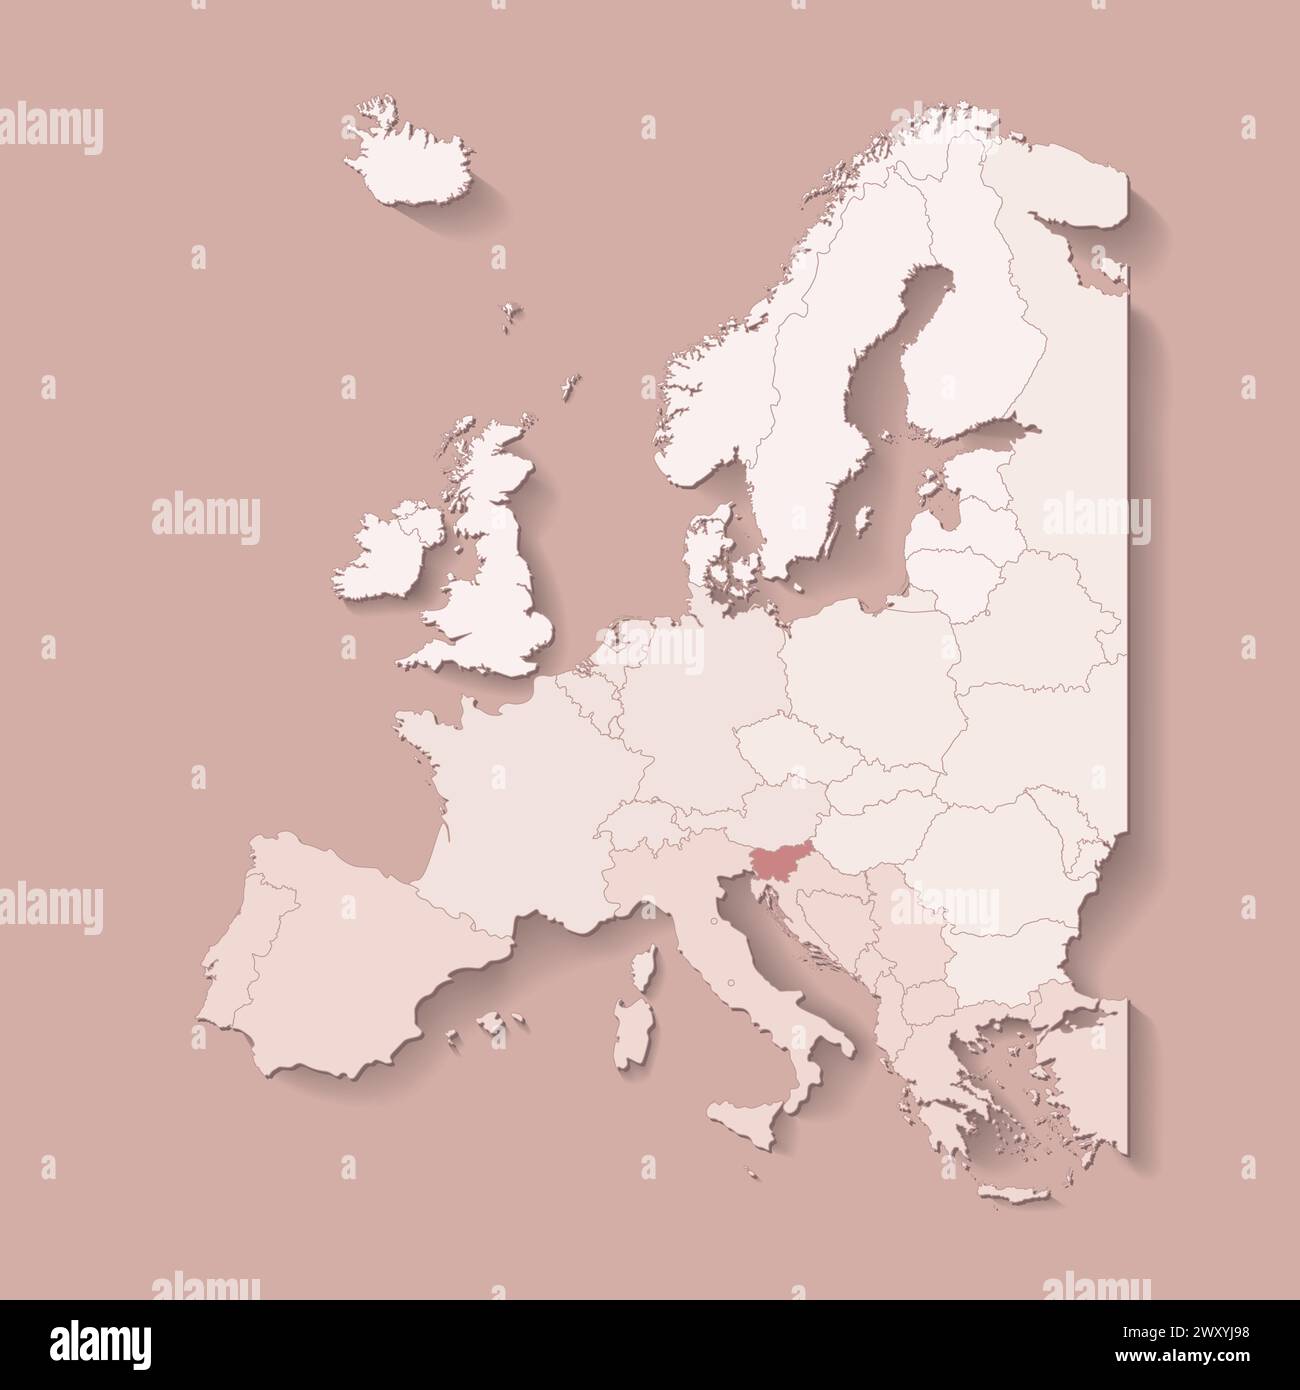 Illustrazione vettoriale con terra europea con confini di stati e paese contrassegnato Slovenia. Mappa politica di colore marrone con occidentale, sud e così via Illustrazione Vettoriale